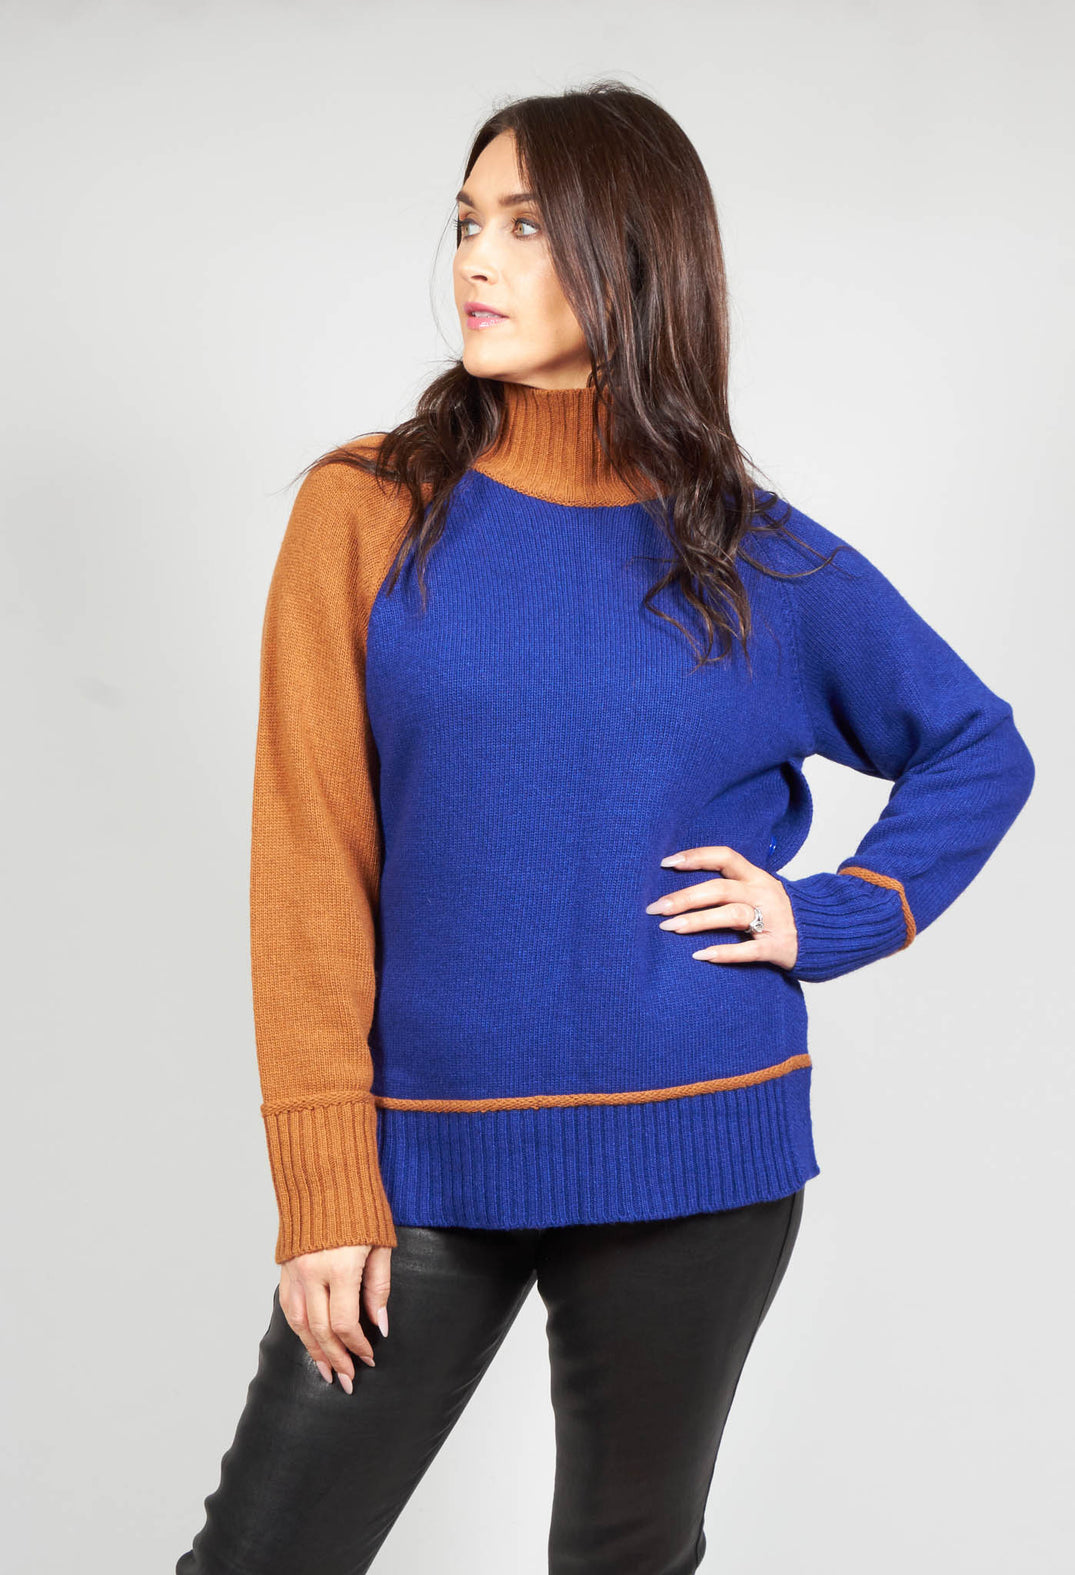 Knitted Sweater in Blu Arancio